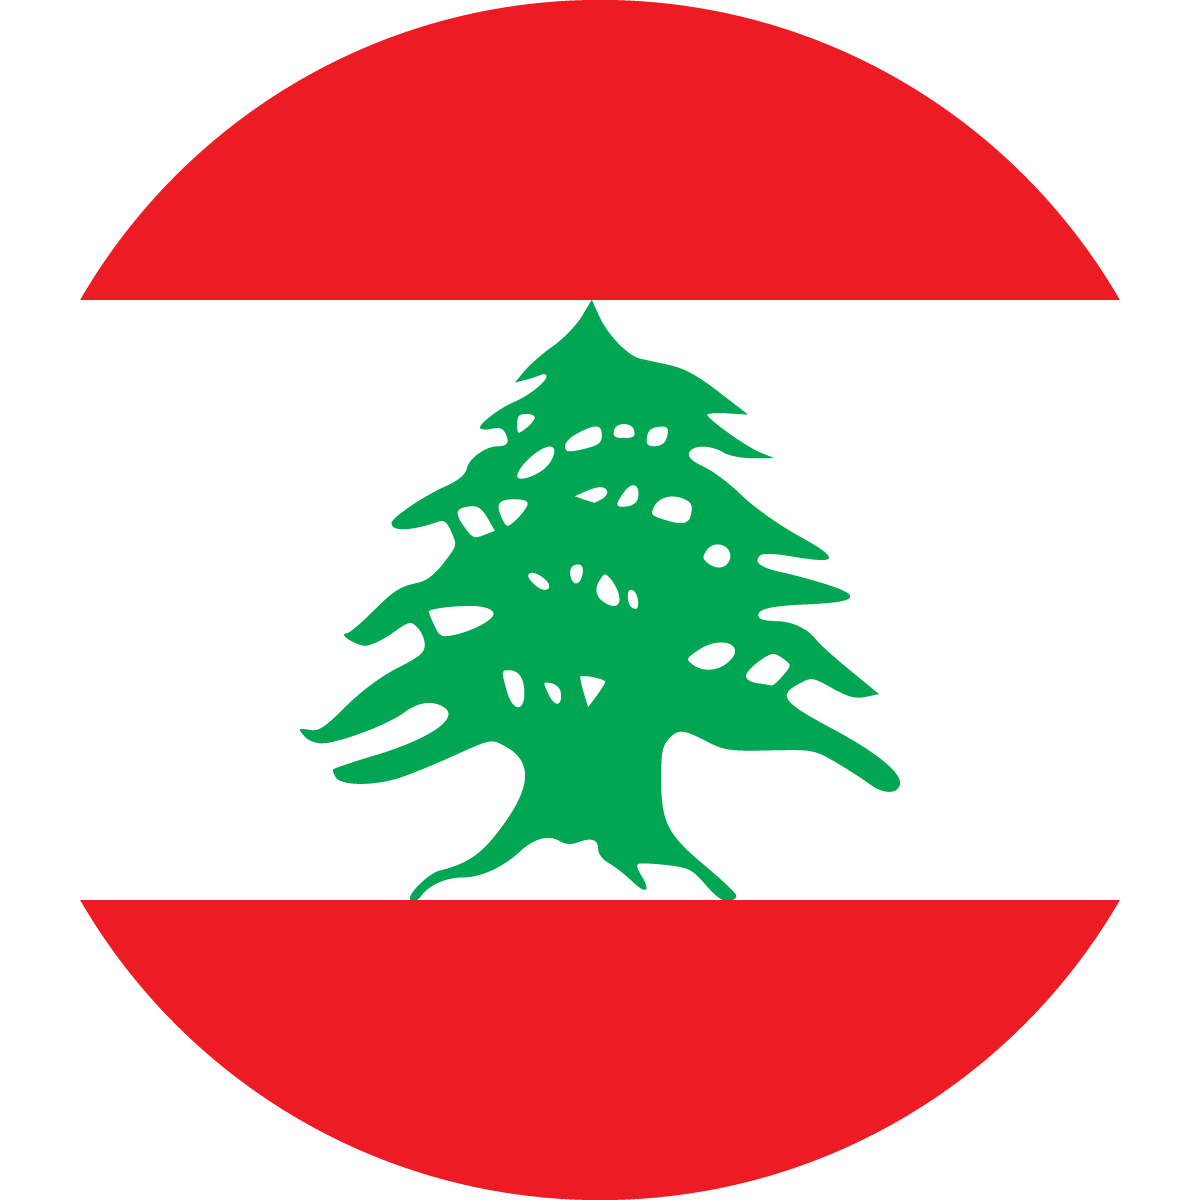 Copy of Copy of Copy of Copy of Copy of Copy of Lebanon